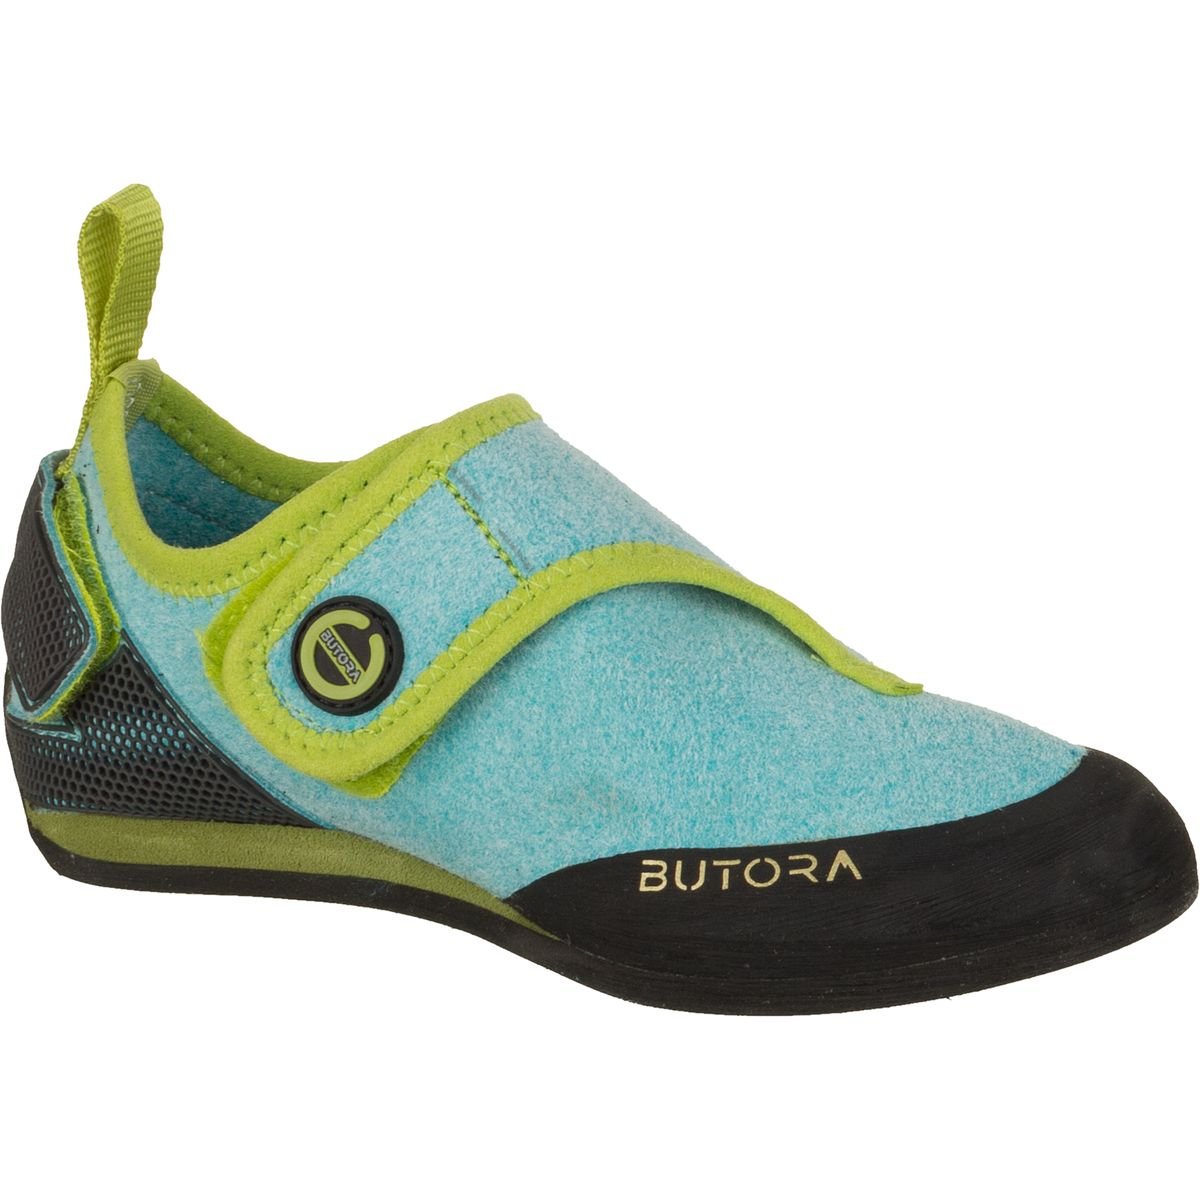 Butora Brava Kids Climbing Shoe